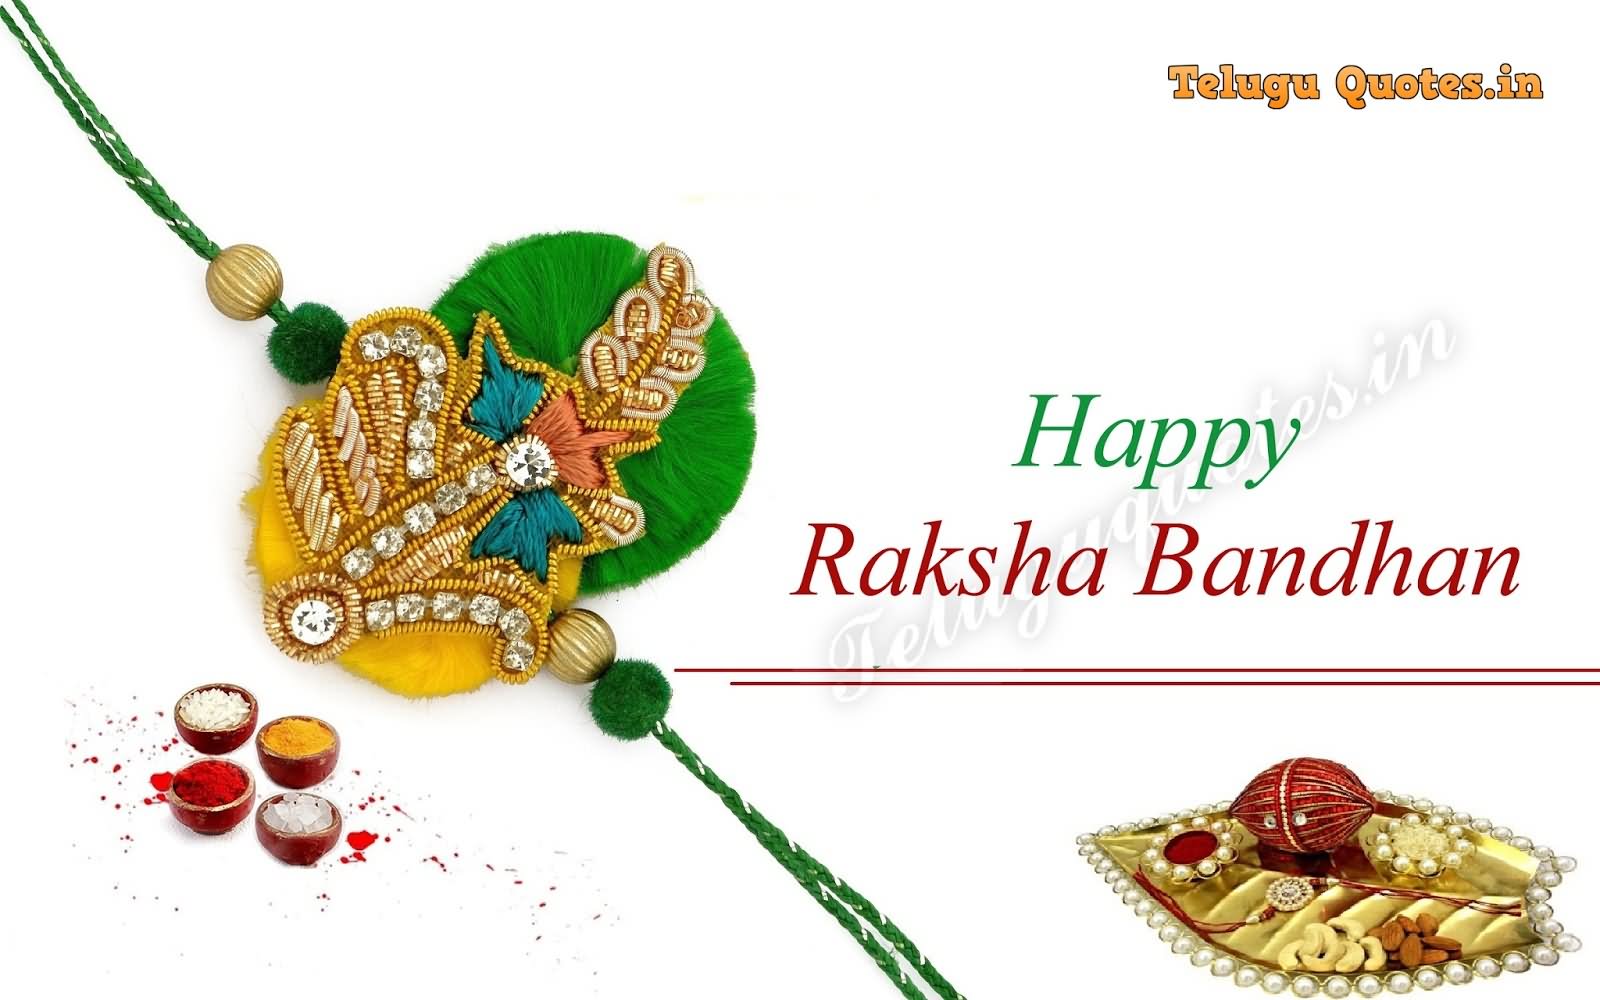 Happy Raksha Bandhan To You